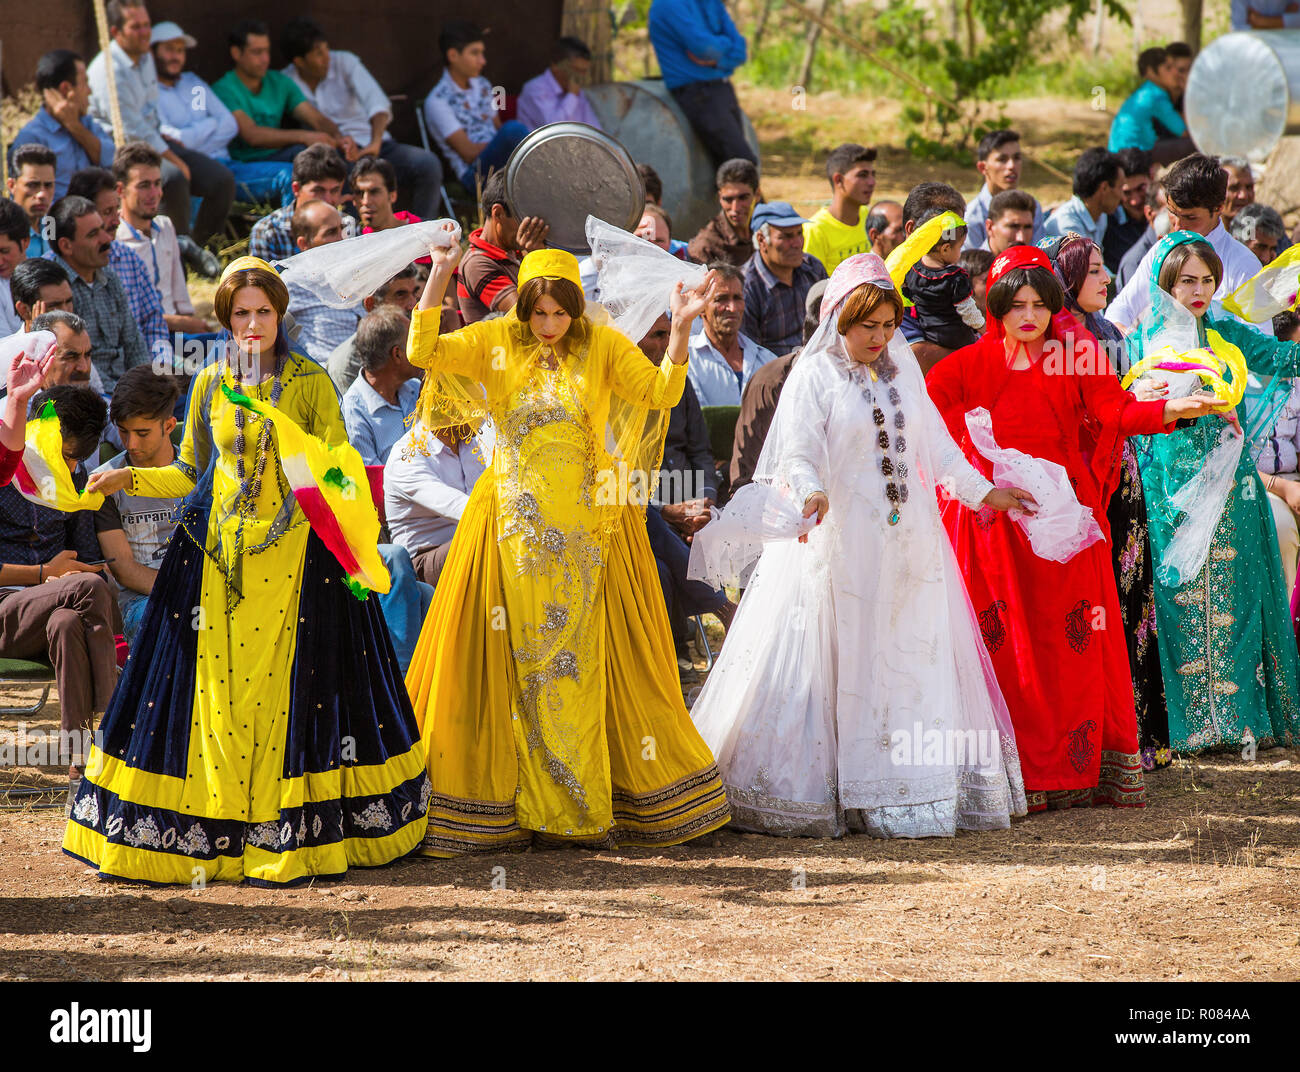 Danses traditionnelles du Qashqai pendant la cérémonie de mariage, peuple nomade d'Iran. Banque D'Images